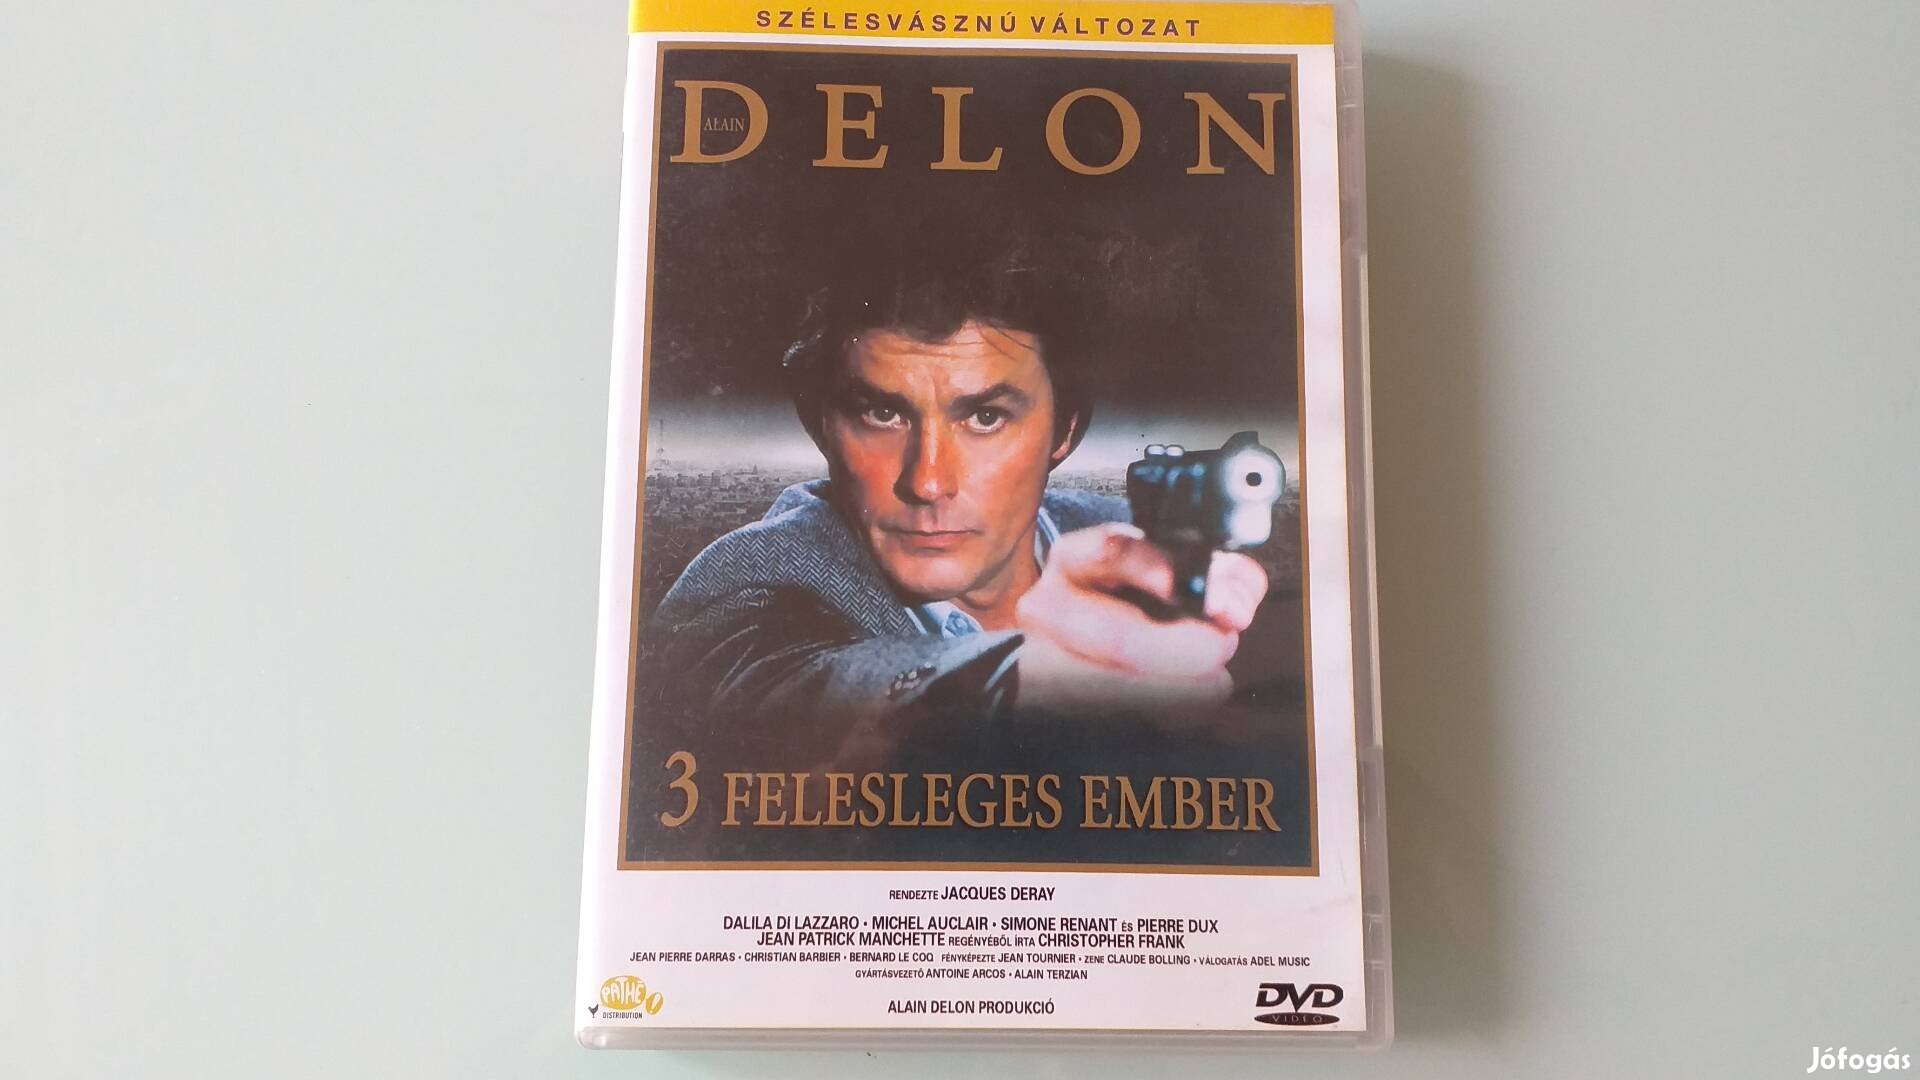 3 felesleges ember krimi DVD-Alain Delon